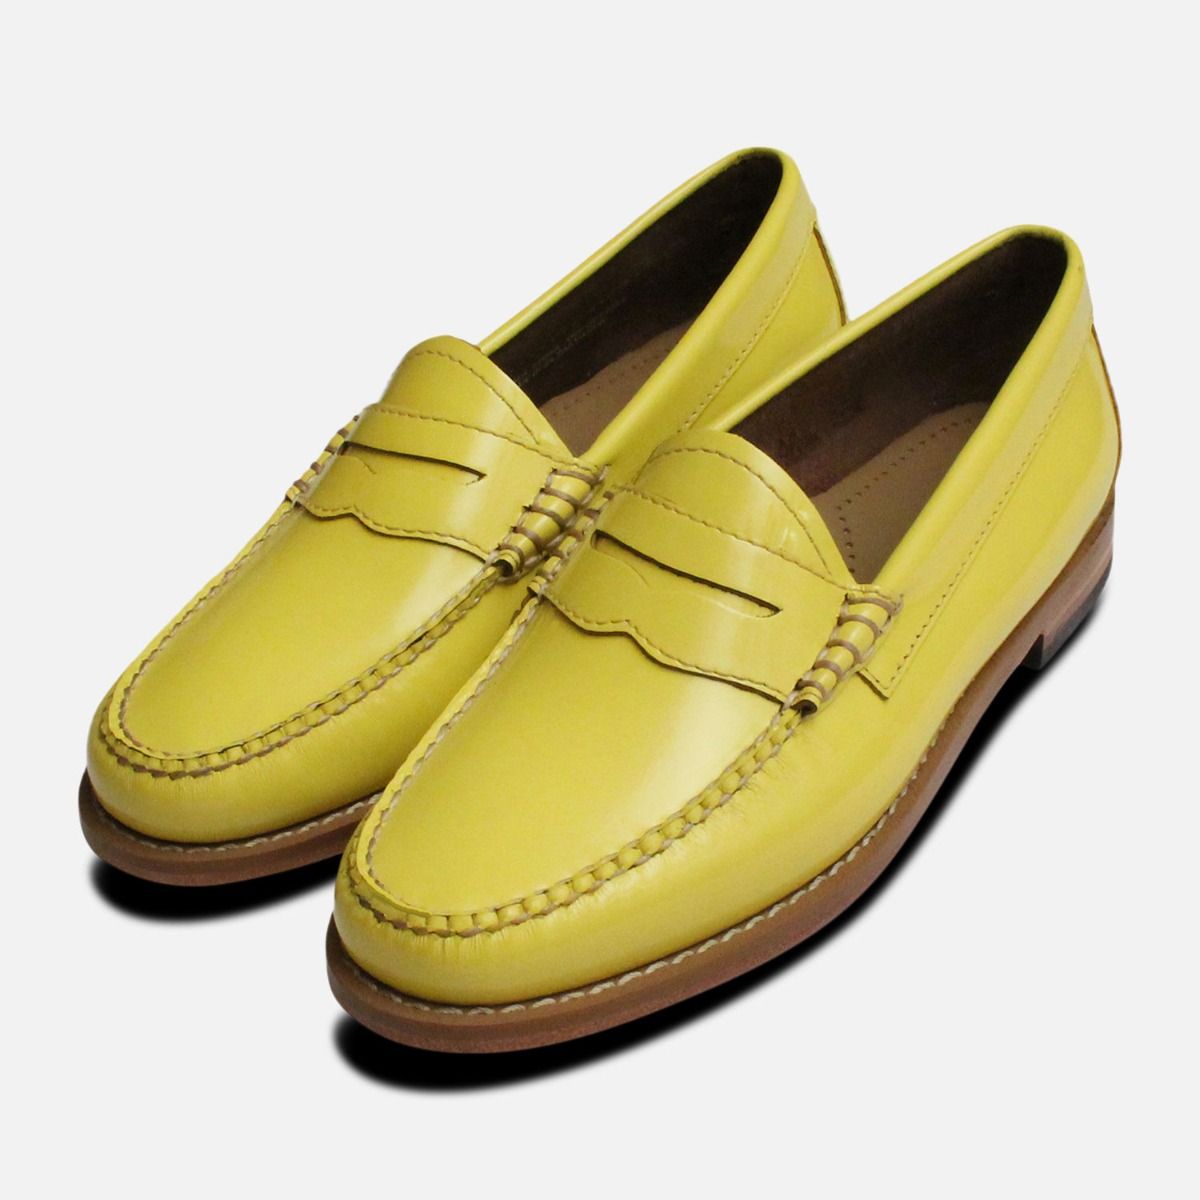 Lemon Yellow Patent Leather Ladies 